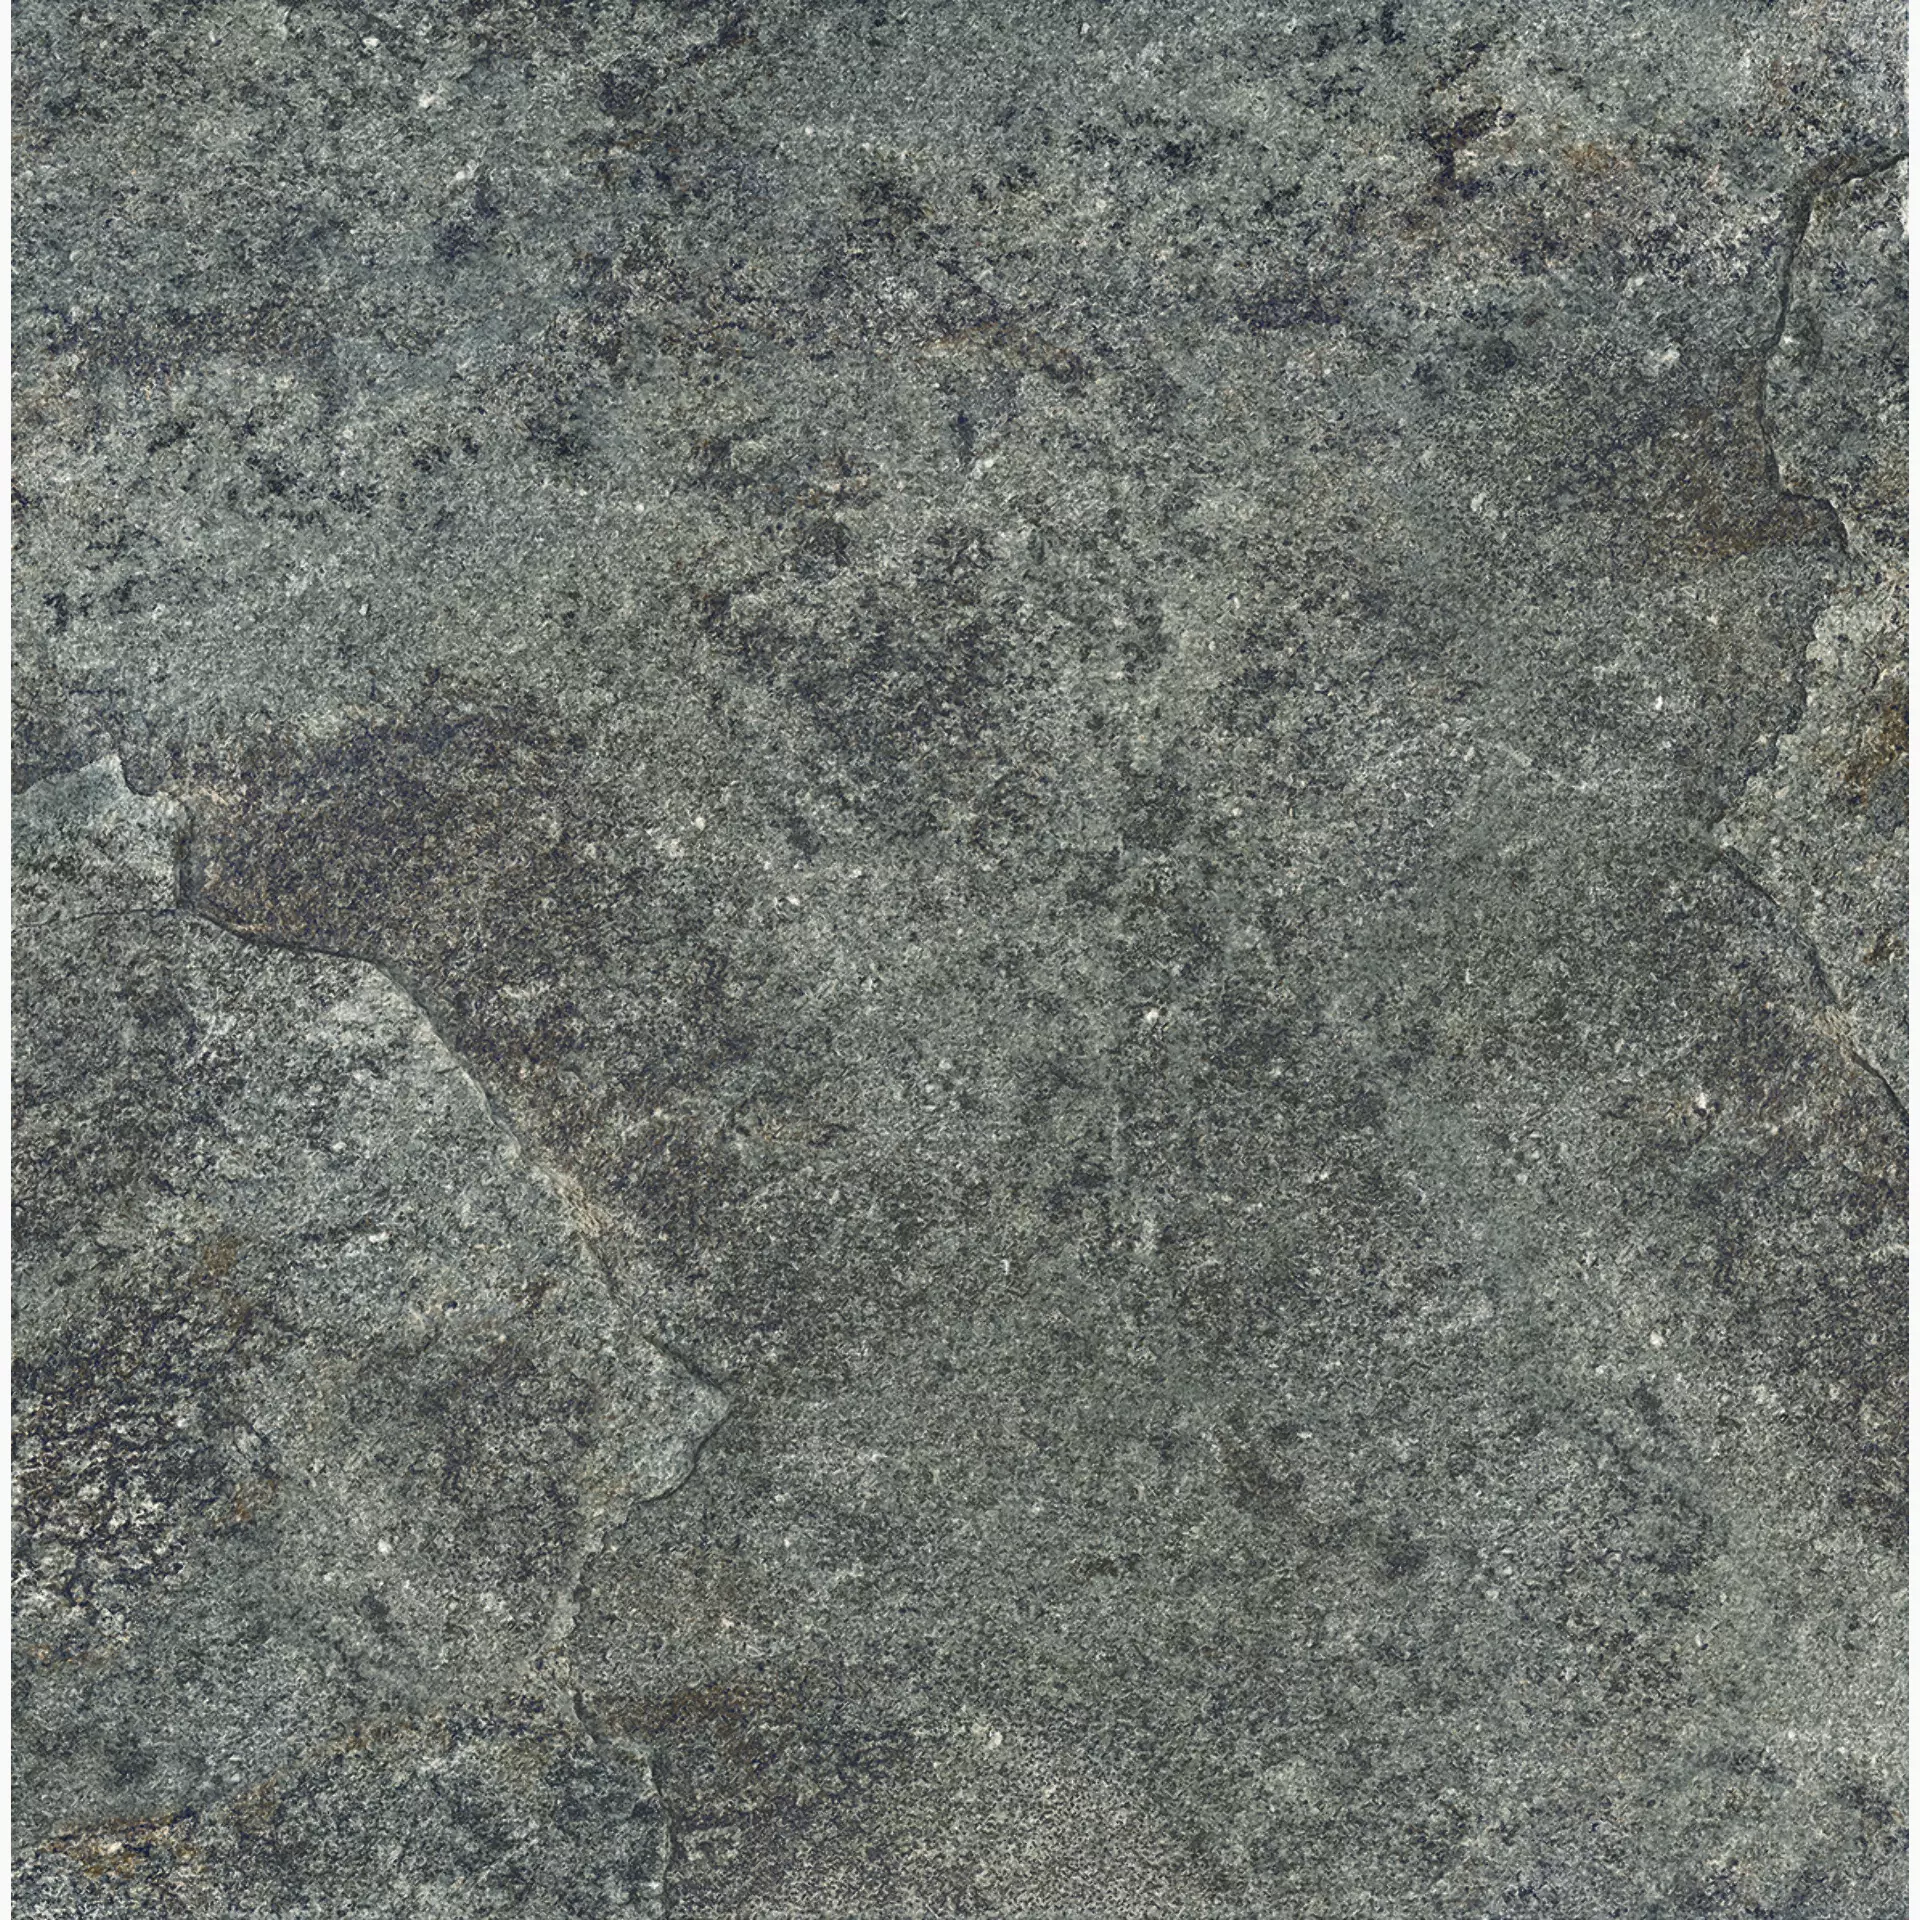 Ergon Oros Stone Antracite Naturale Antracite EKUD natur 60x60cm rektifiziert 9,5mm